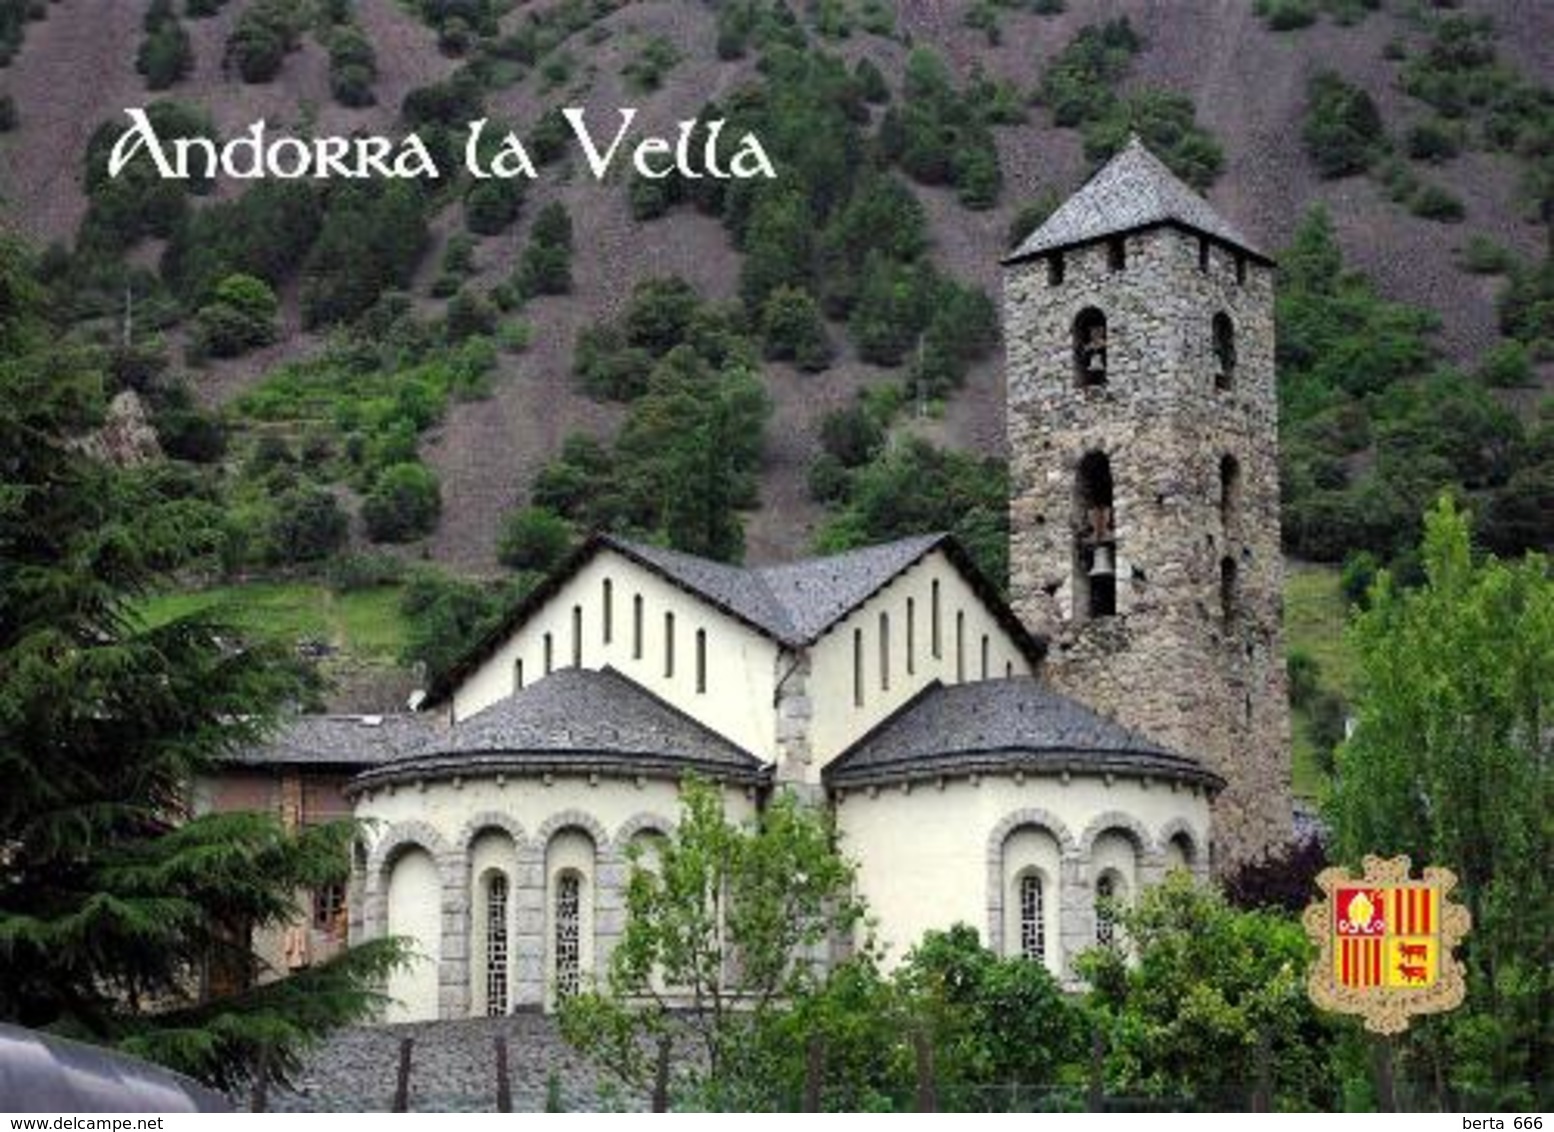 Andorra La Vella Sant Esteve Church New Postcard - Andorra